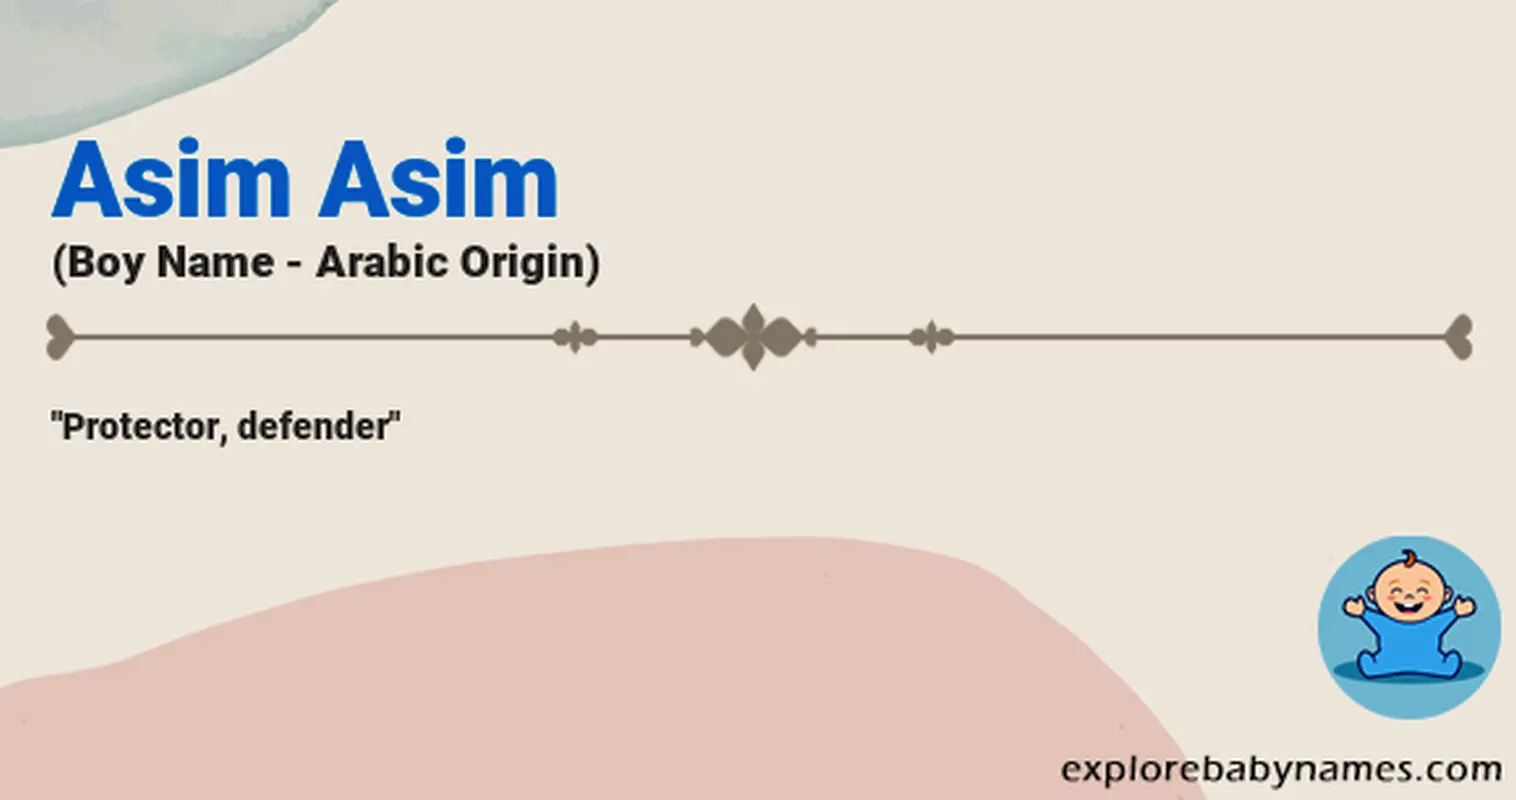 Meaning of Asim Asim